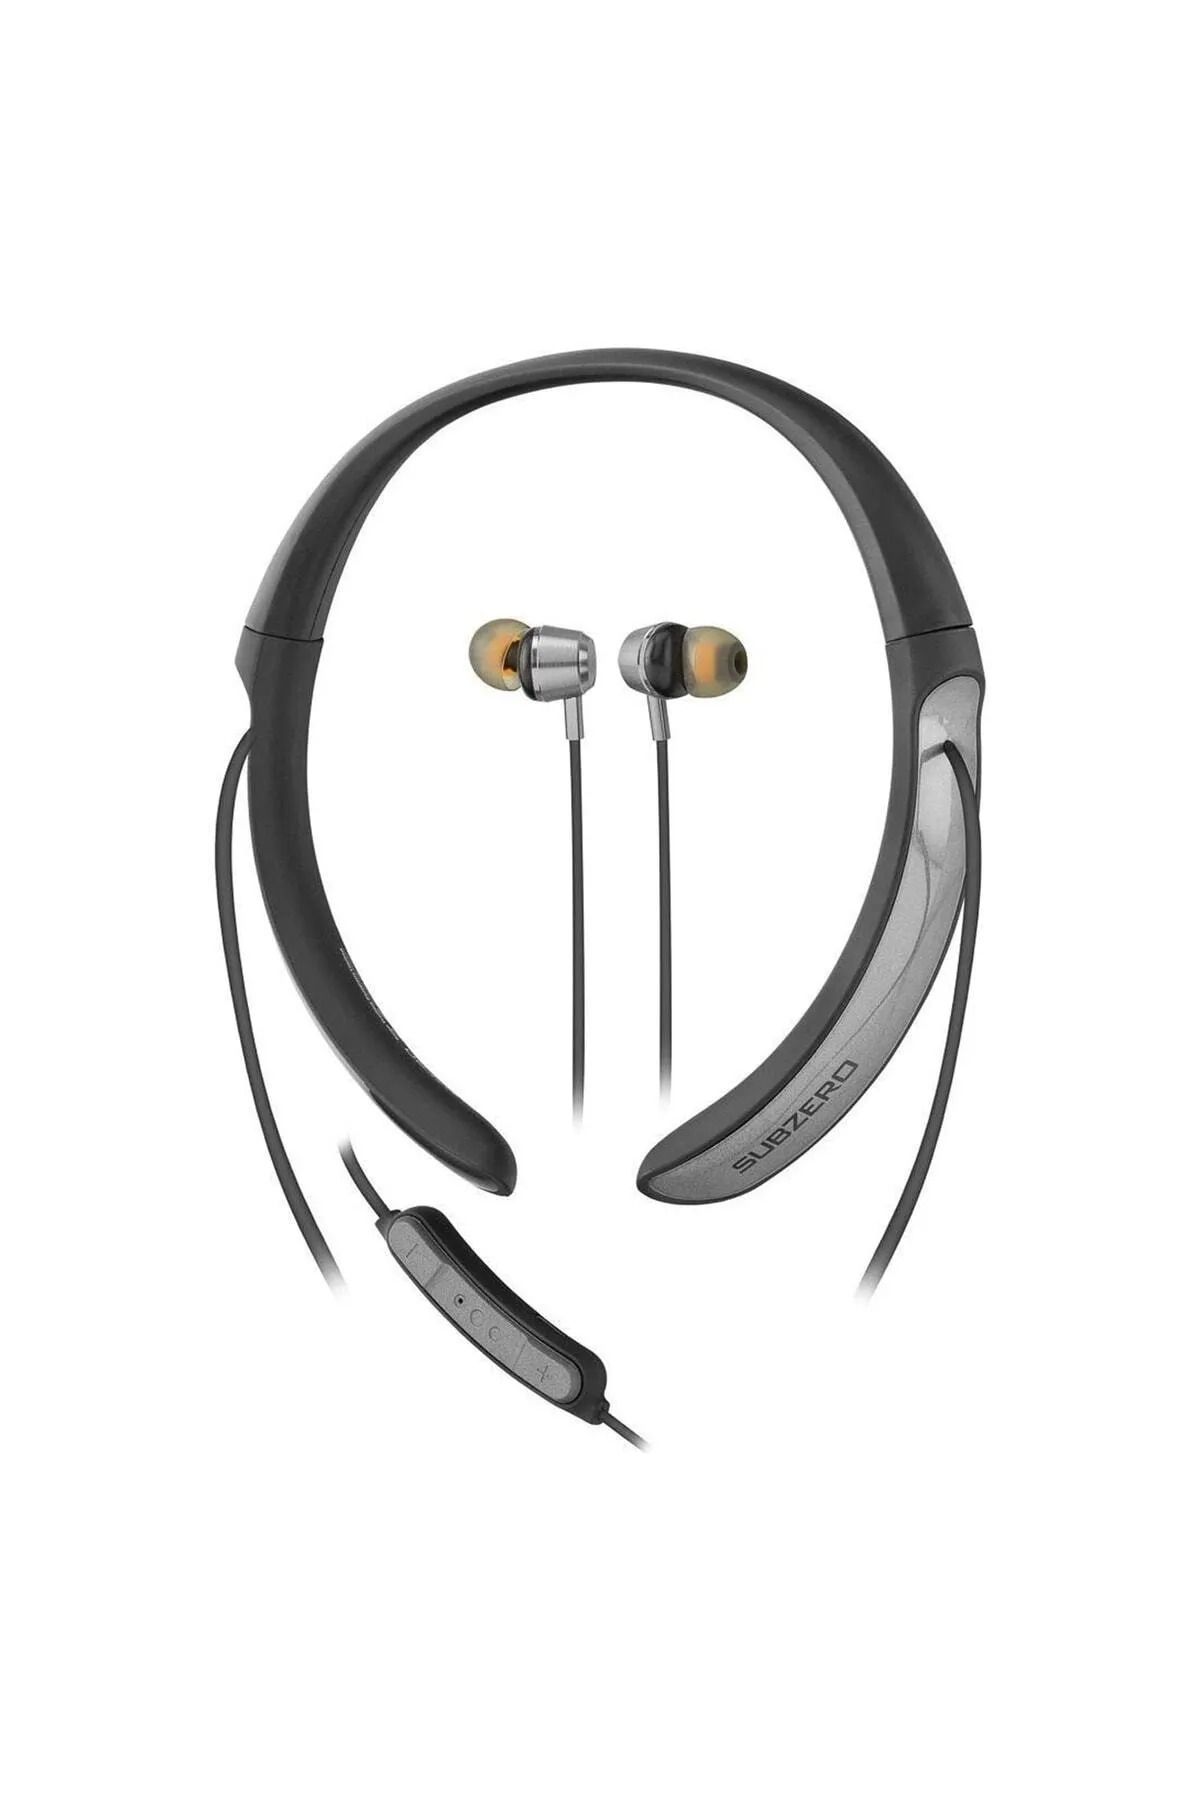 Subzero 72 Saat Müzik Dinleme Keyfi Boyun Askılı Bluetooth Kulaklık 1. Kalite